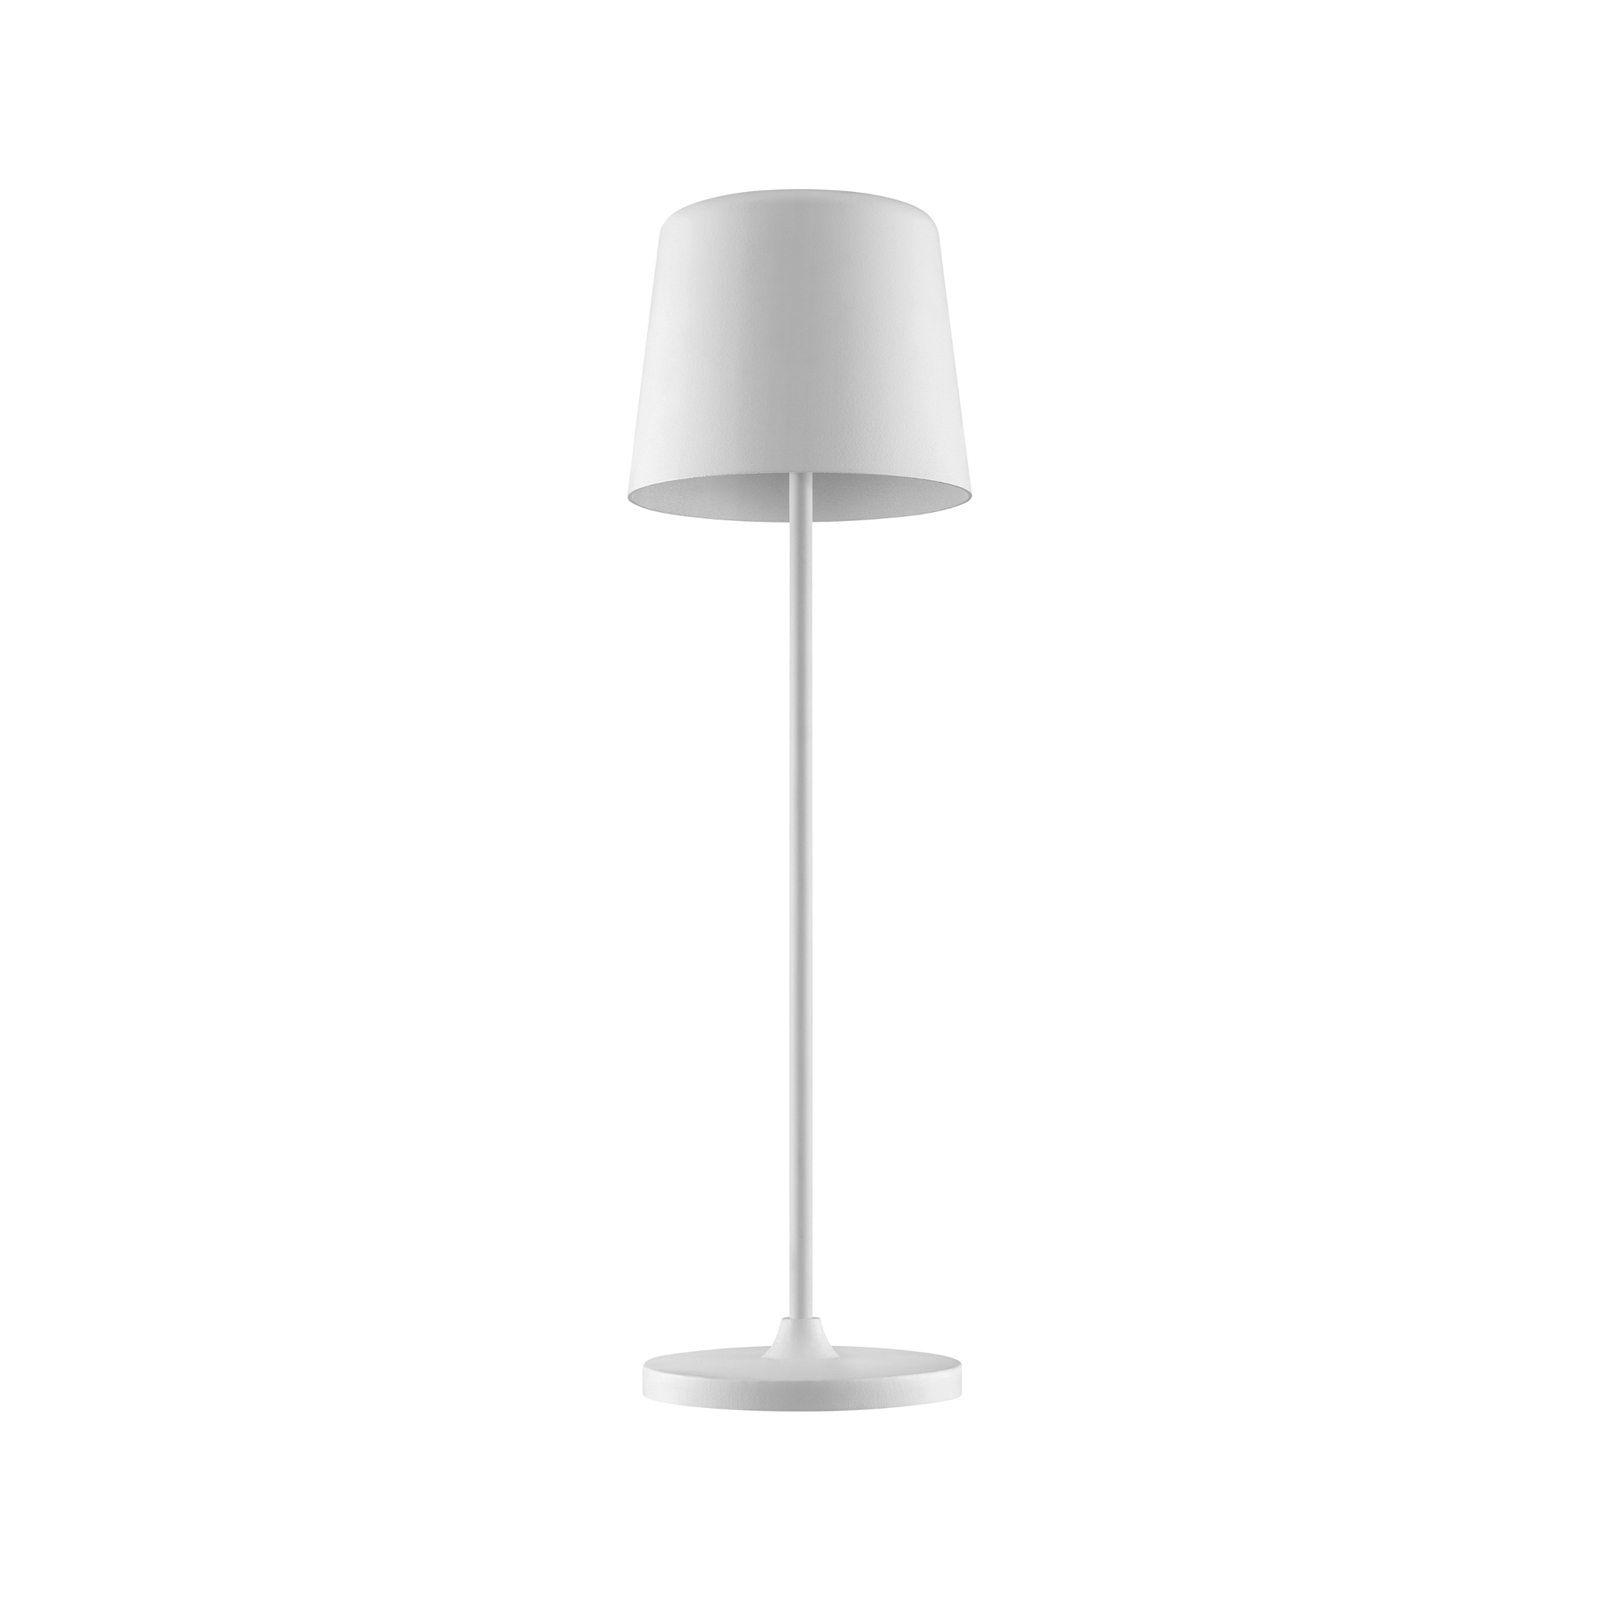 Kaami Lampada LED da tavolo, dimmerabile, bianco opaco